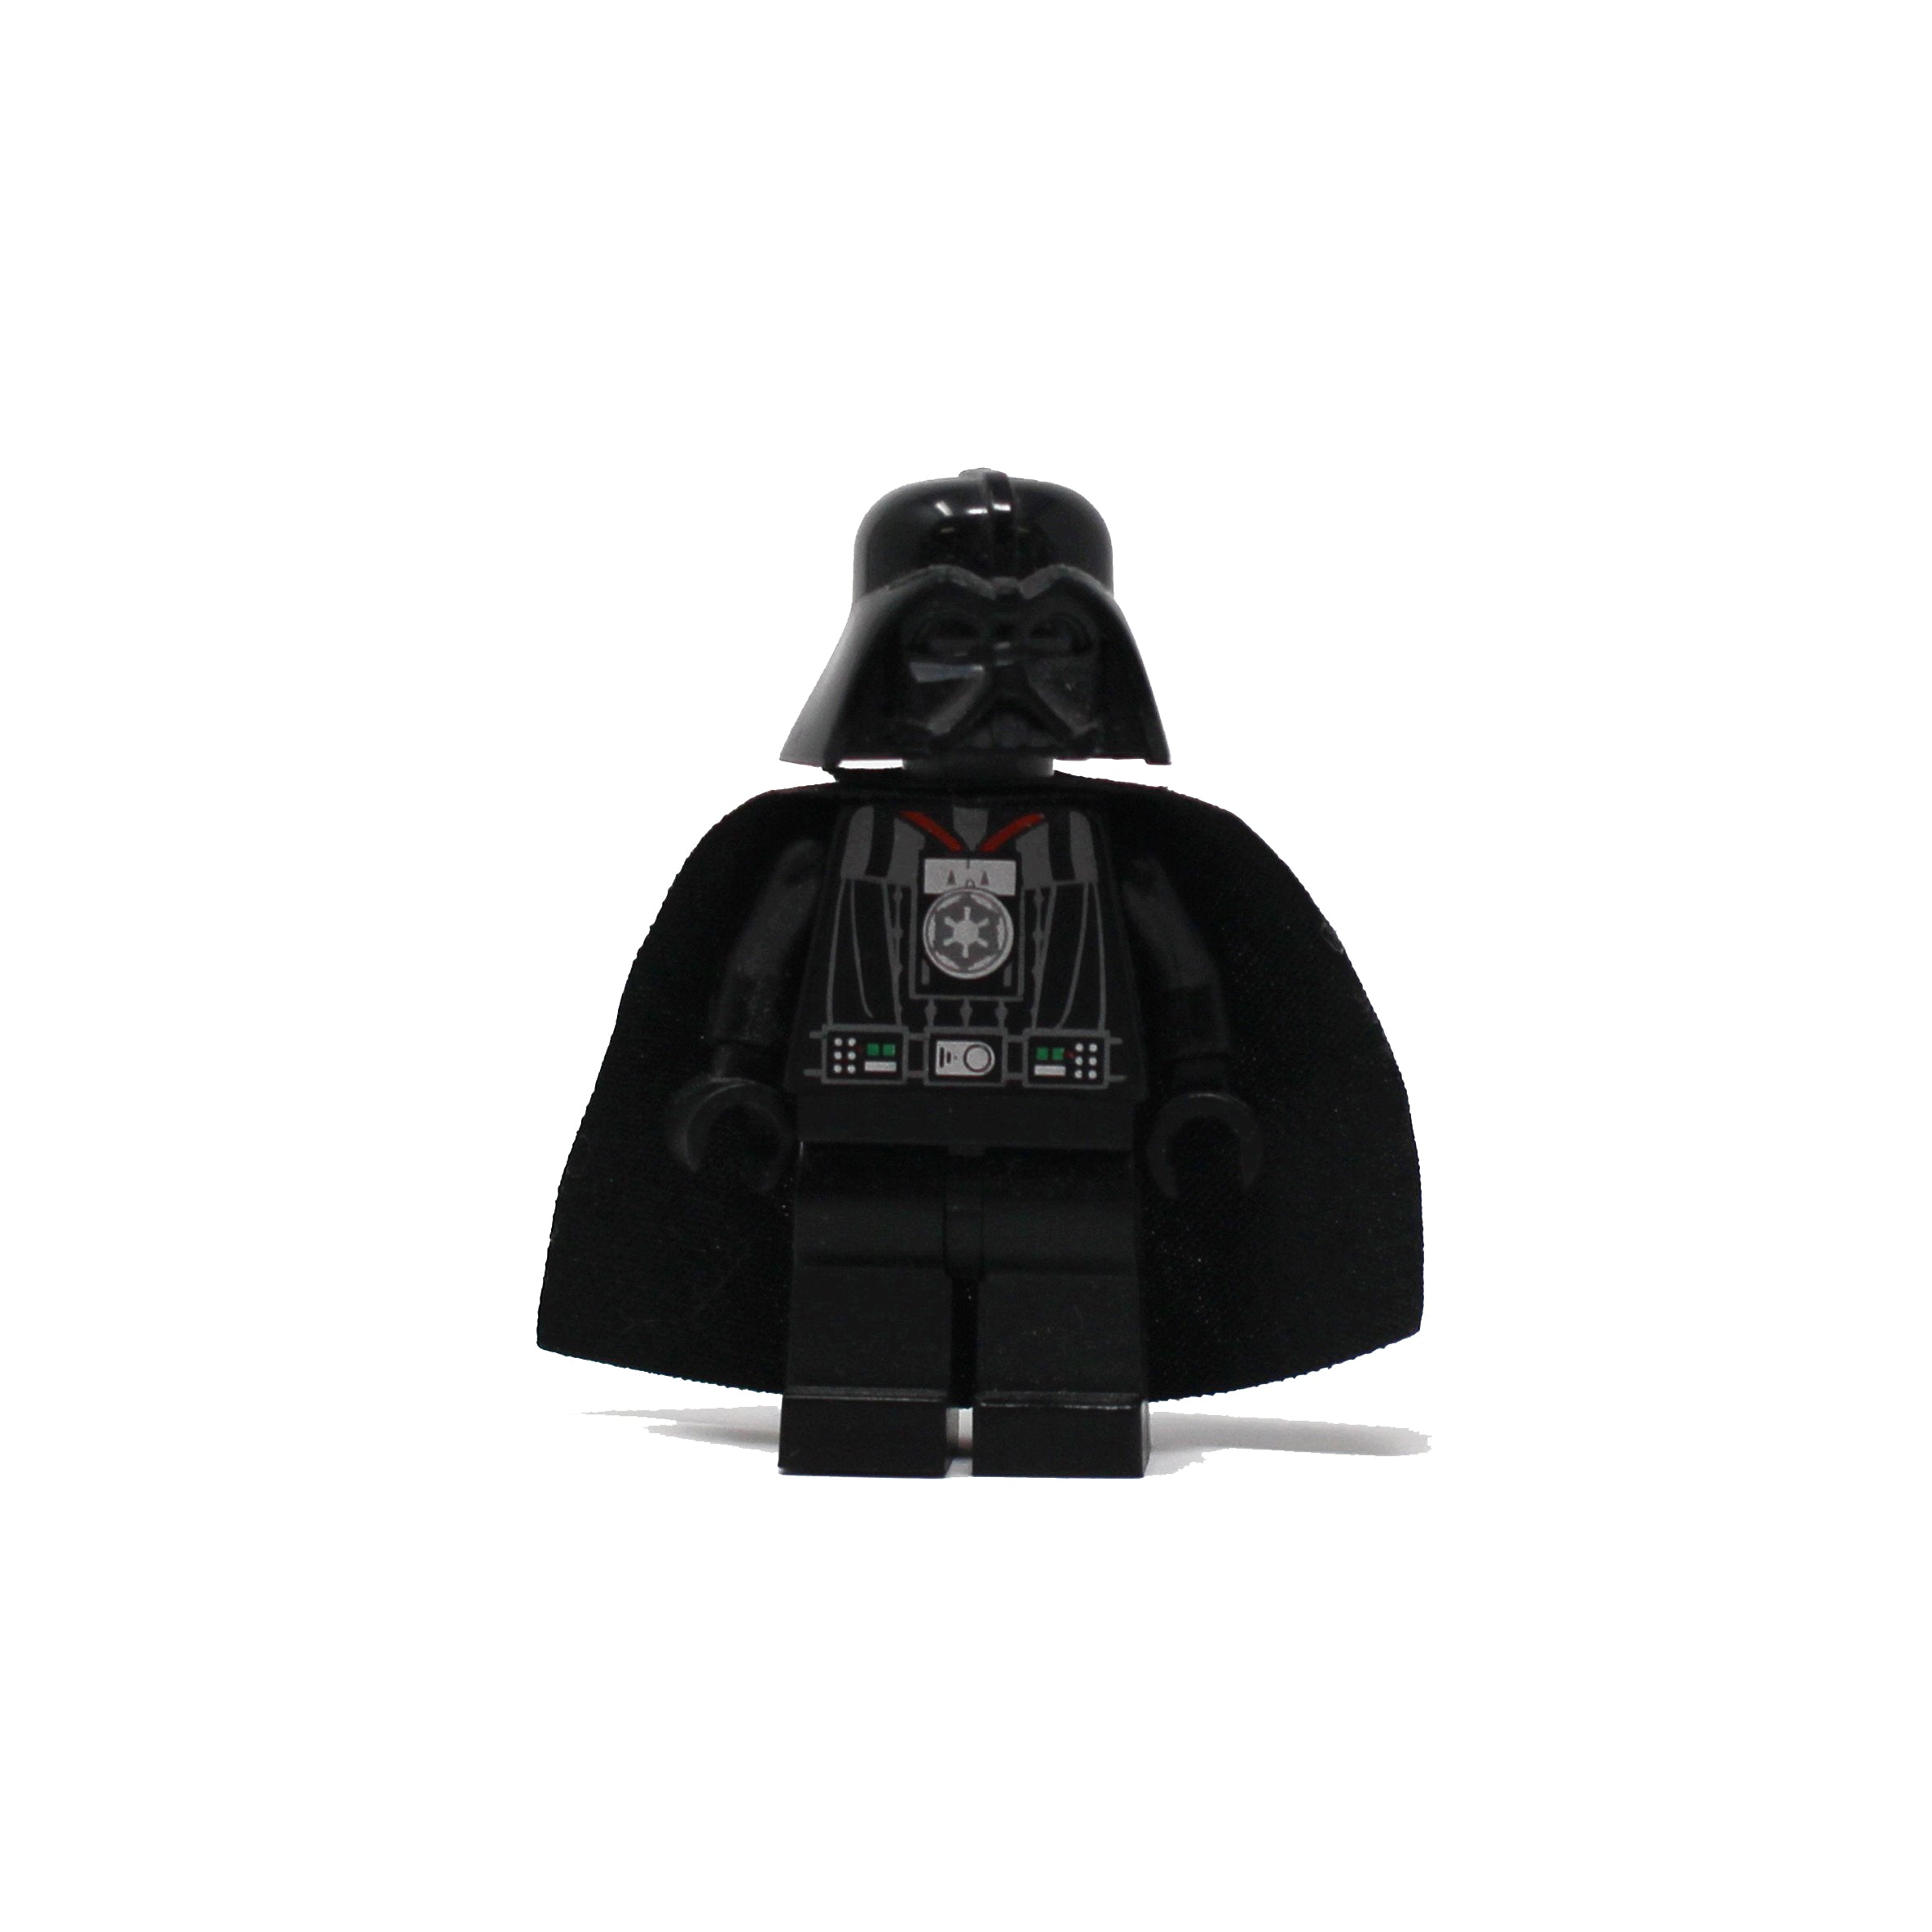 Darth Vader (type 1 helmet, medal)